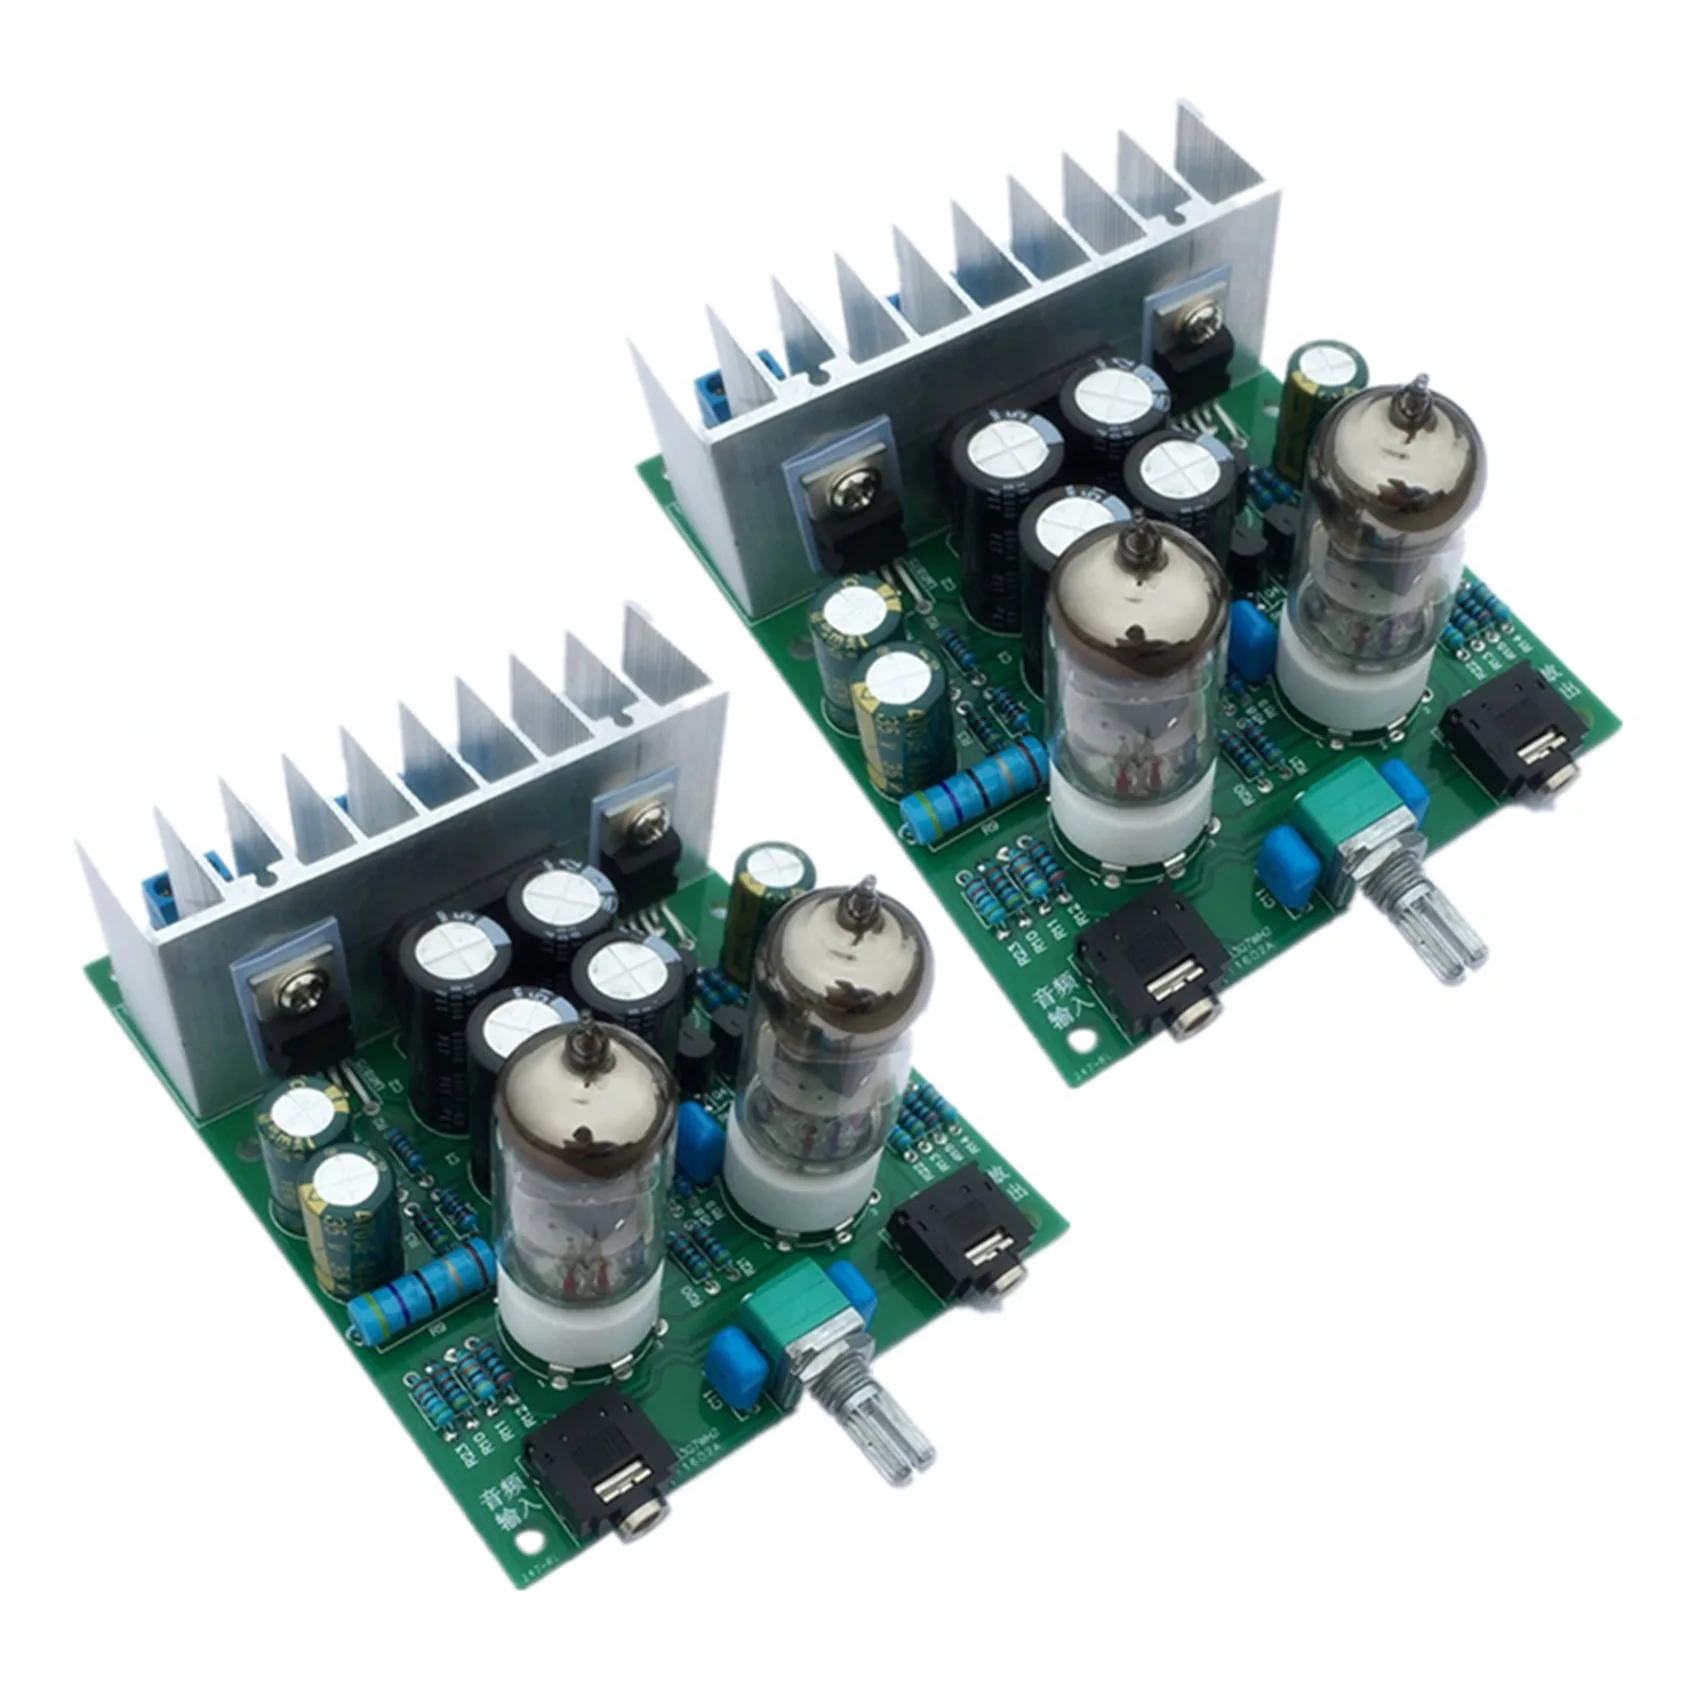 

2X HIFI 6J1 Tube Amplifier Headphones Amplifiers LM1875T Power Amplifier Board 30W Preamp Bile Buffer DIY Kits